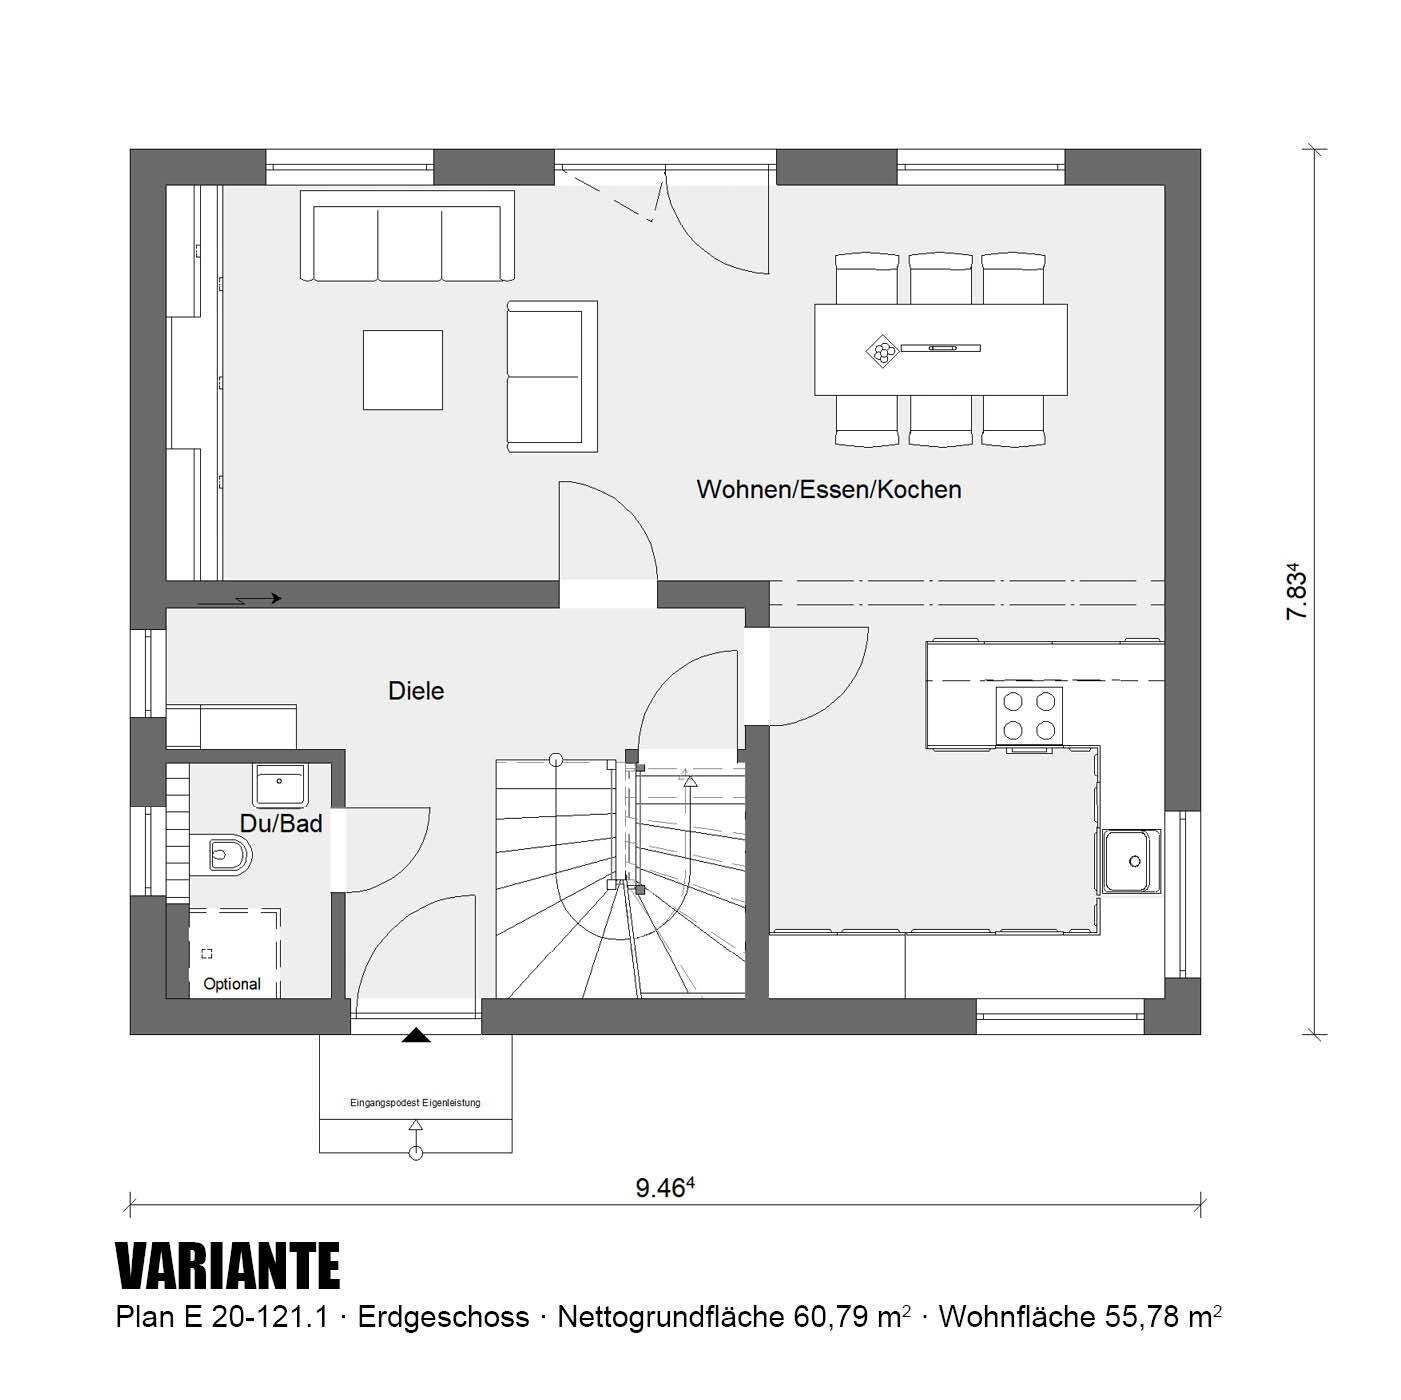 Aktionshaus-Erdgeschoss-Variante-E20-121.1